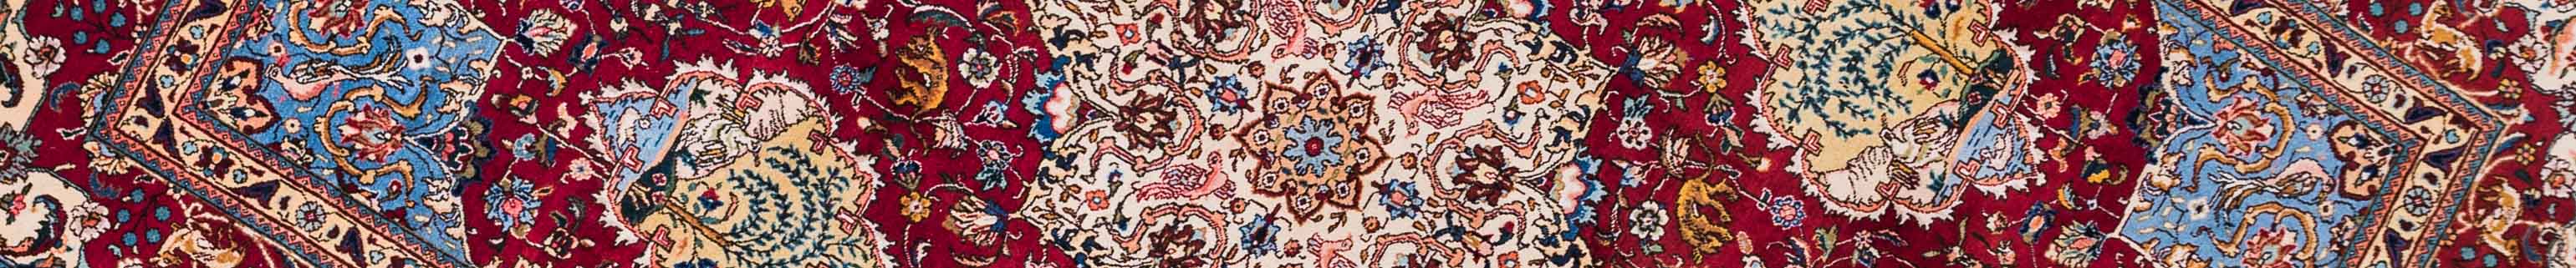 Tabriz Persian Carpet Rug N1Carpet Canada Montreal Tapis Persan 2850